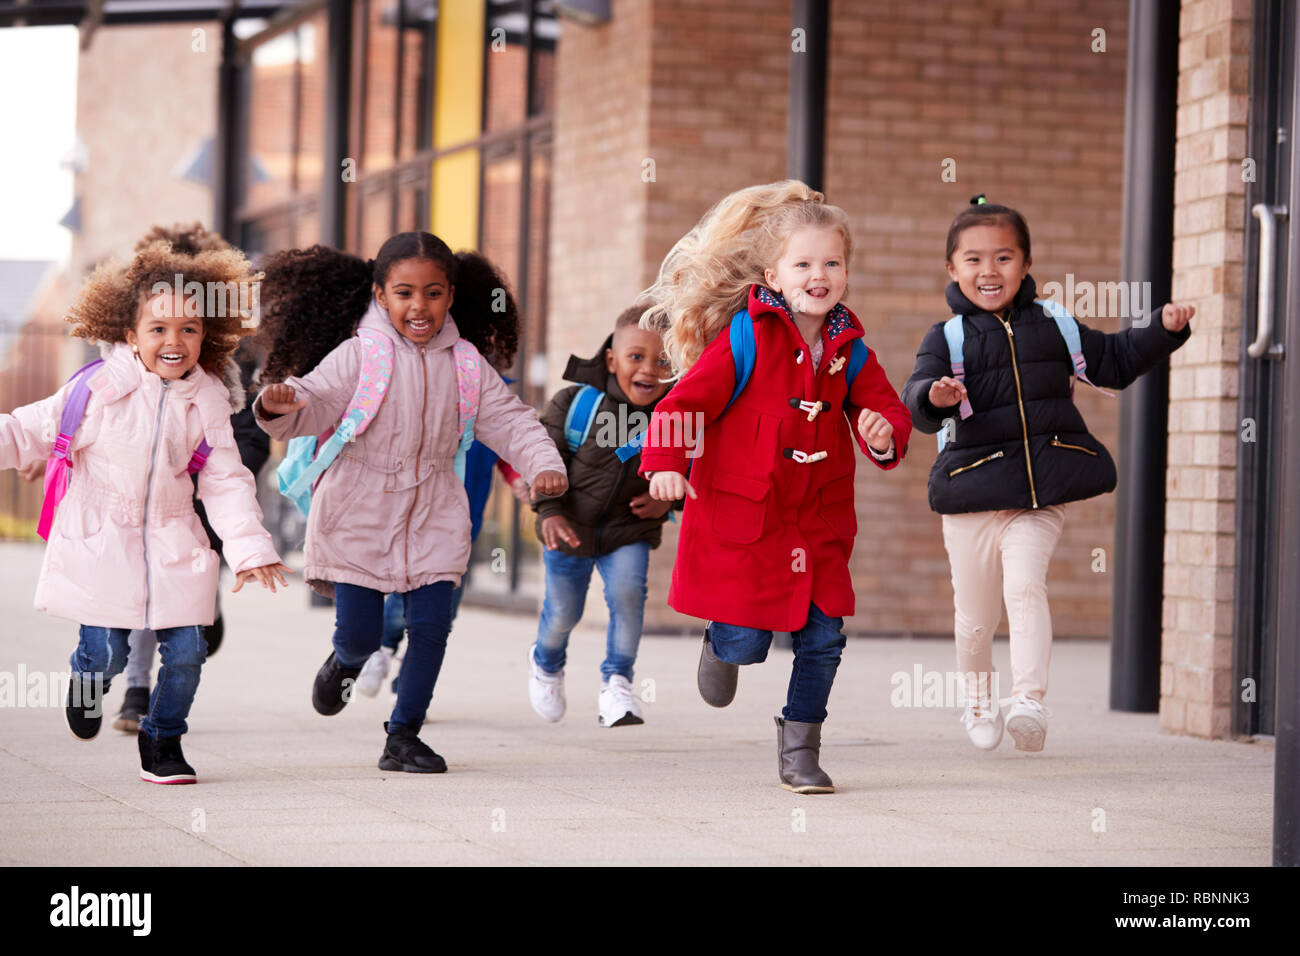 Glückliche junge Schule Mädchen, die Mäntel und tragen Schulmappen in einen Gehweg mit ihren Klassenkameraden außerhalb ihres Säuglings Schule Gebäude läuft Stockfoto